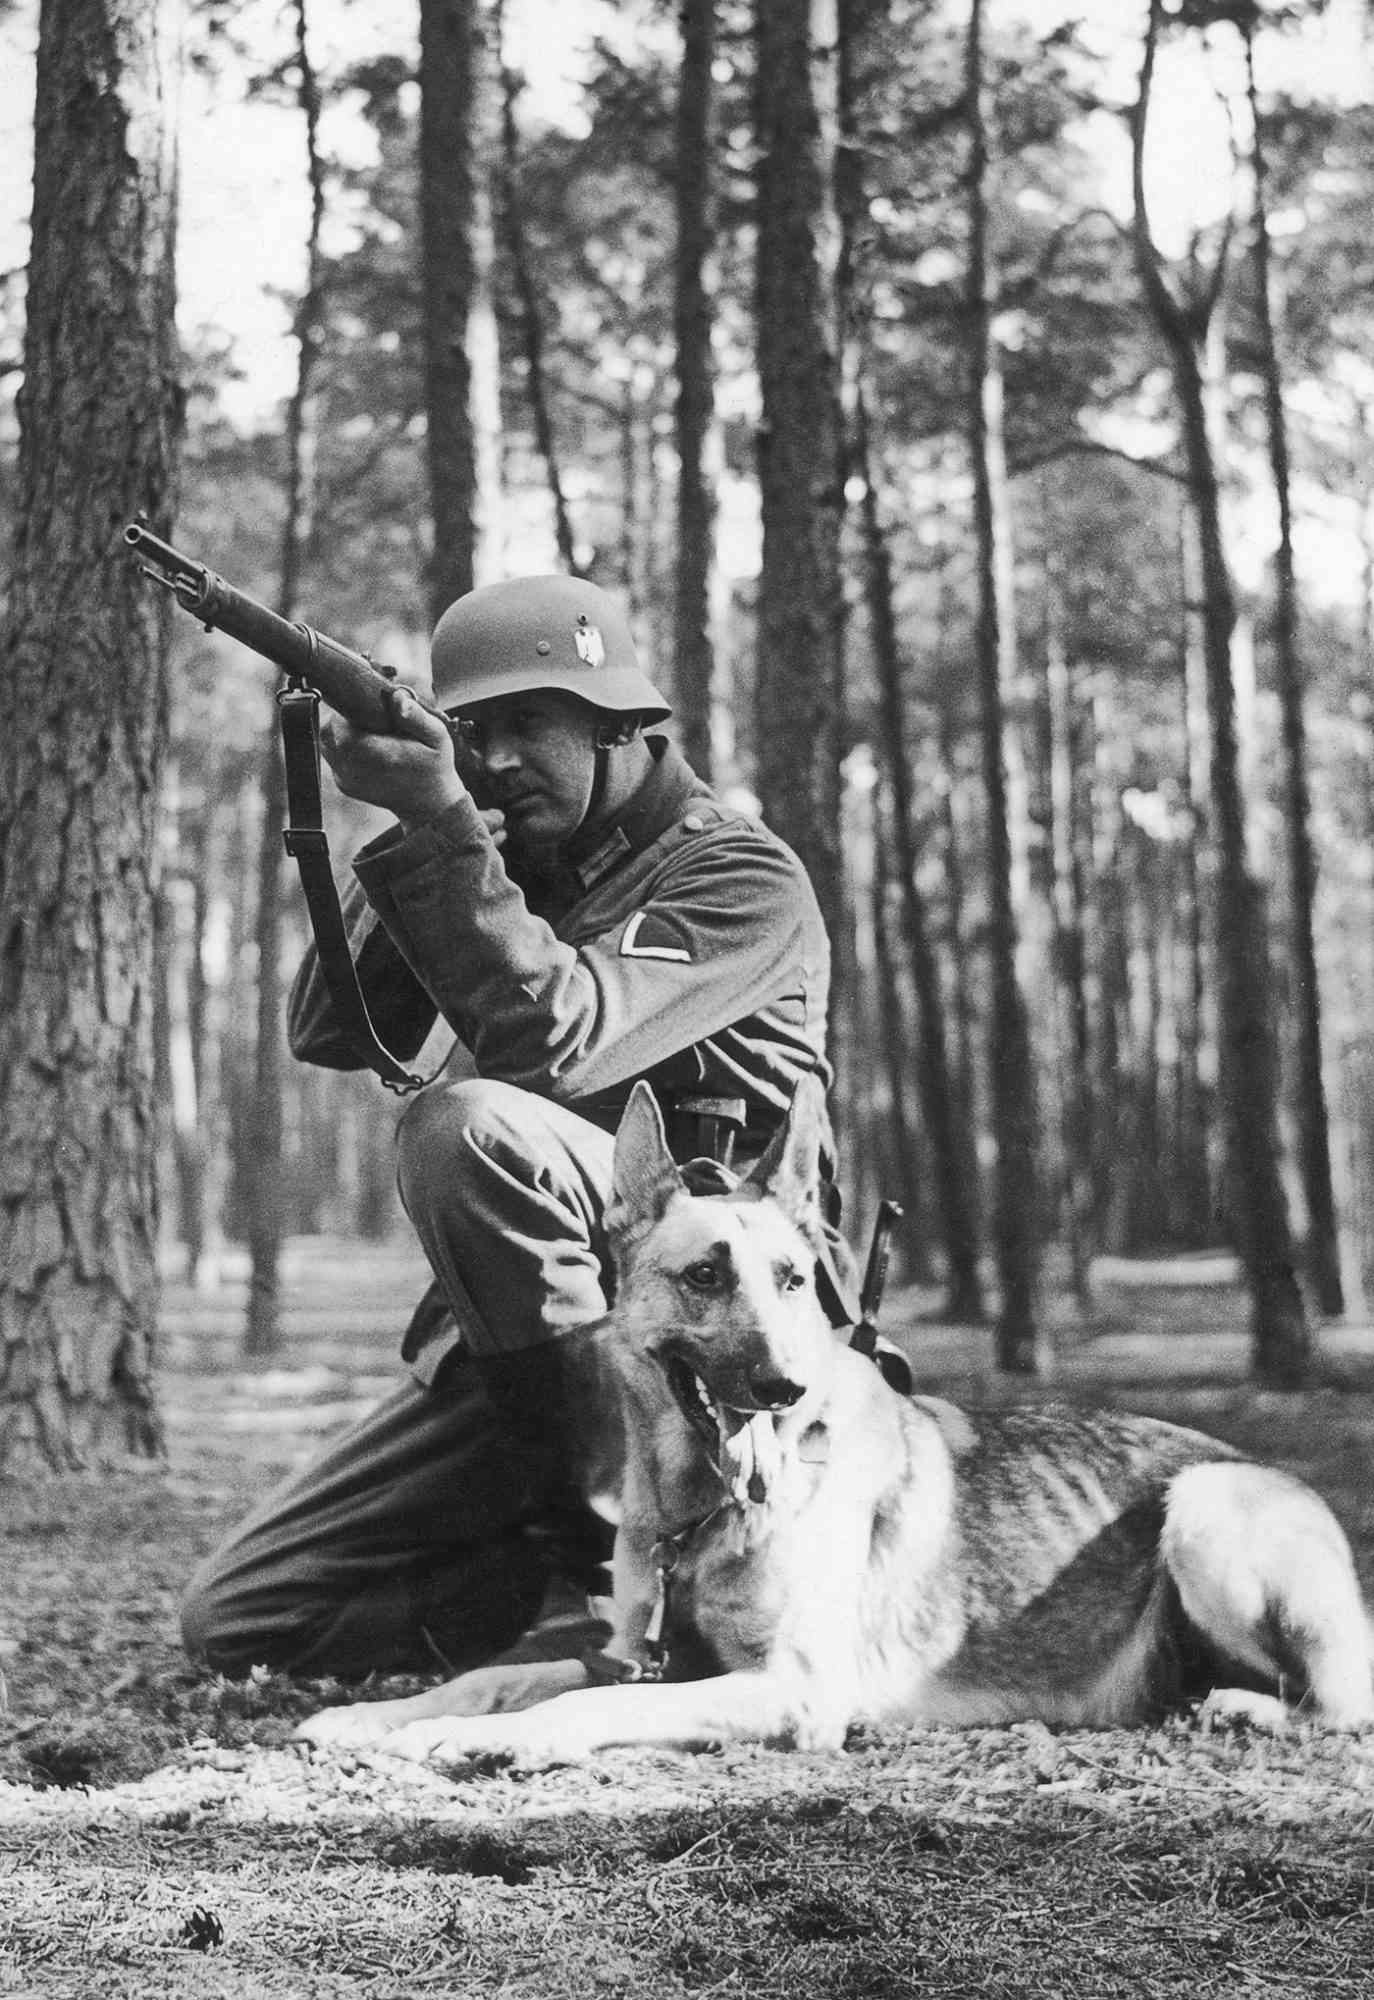 German shepherd with German soldier